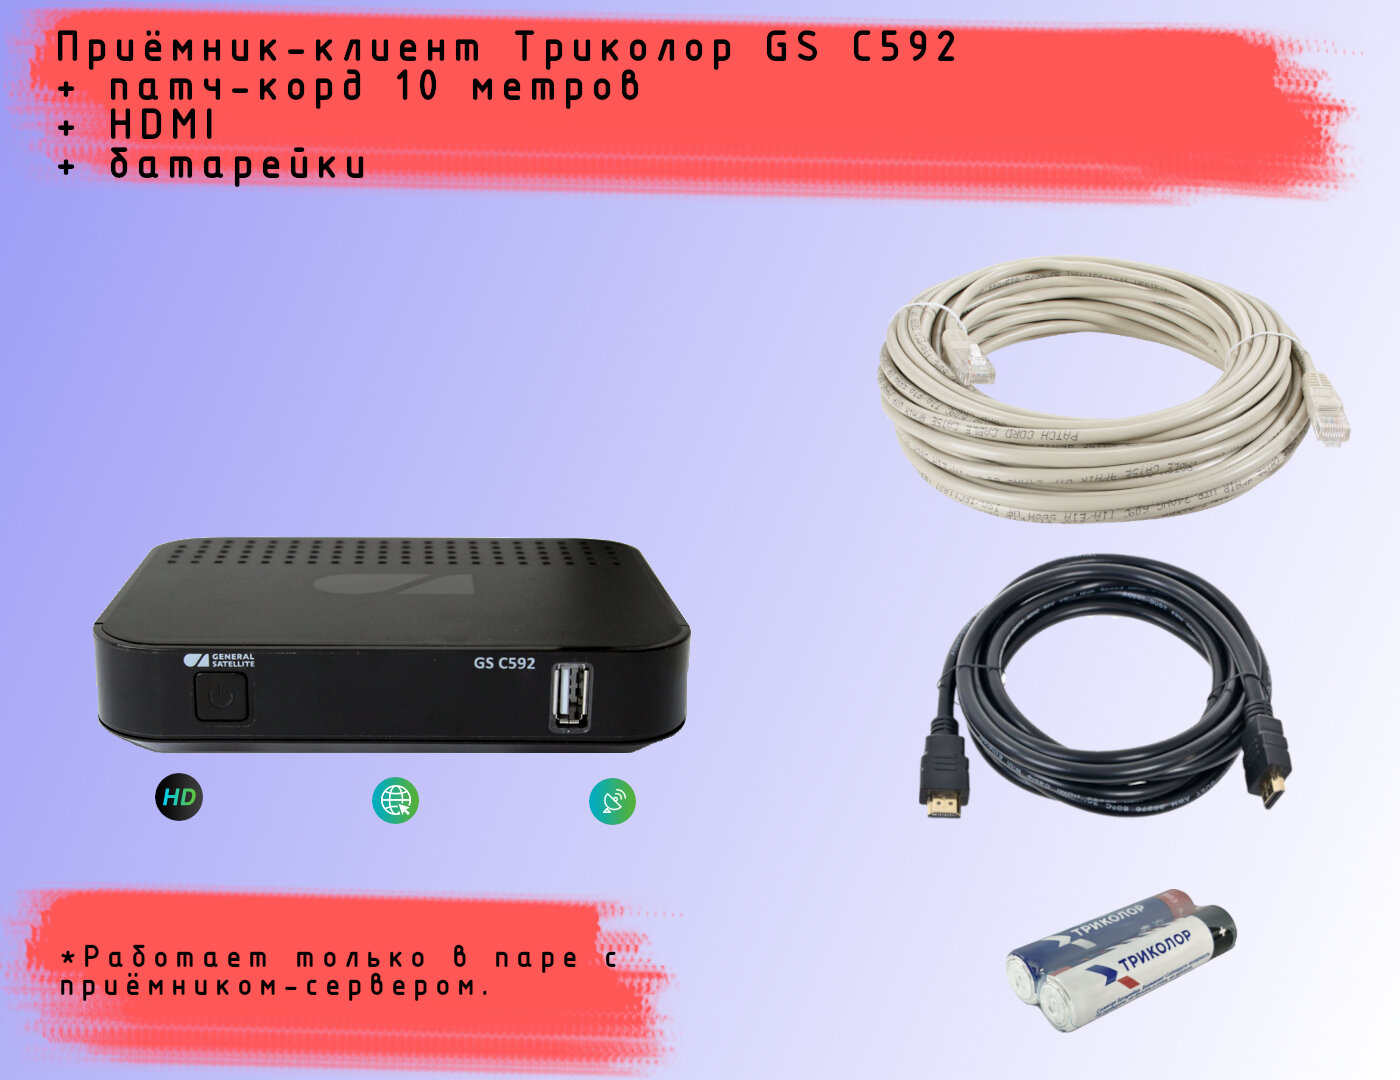 Спутниковый ресивер-клиент Триколор ТВ GS C592 + HDMI кабель 15 метра + батарейки + патч-корд (10 метров)